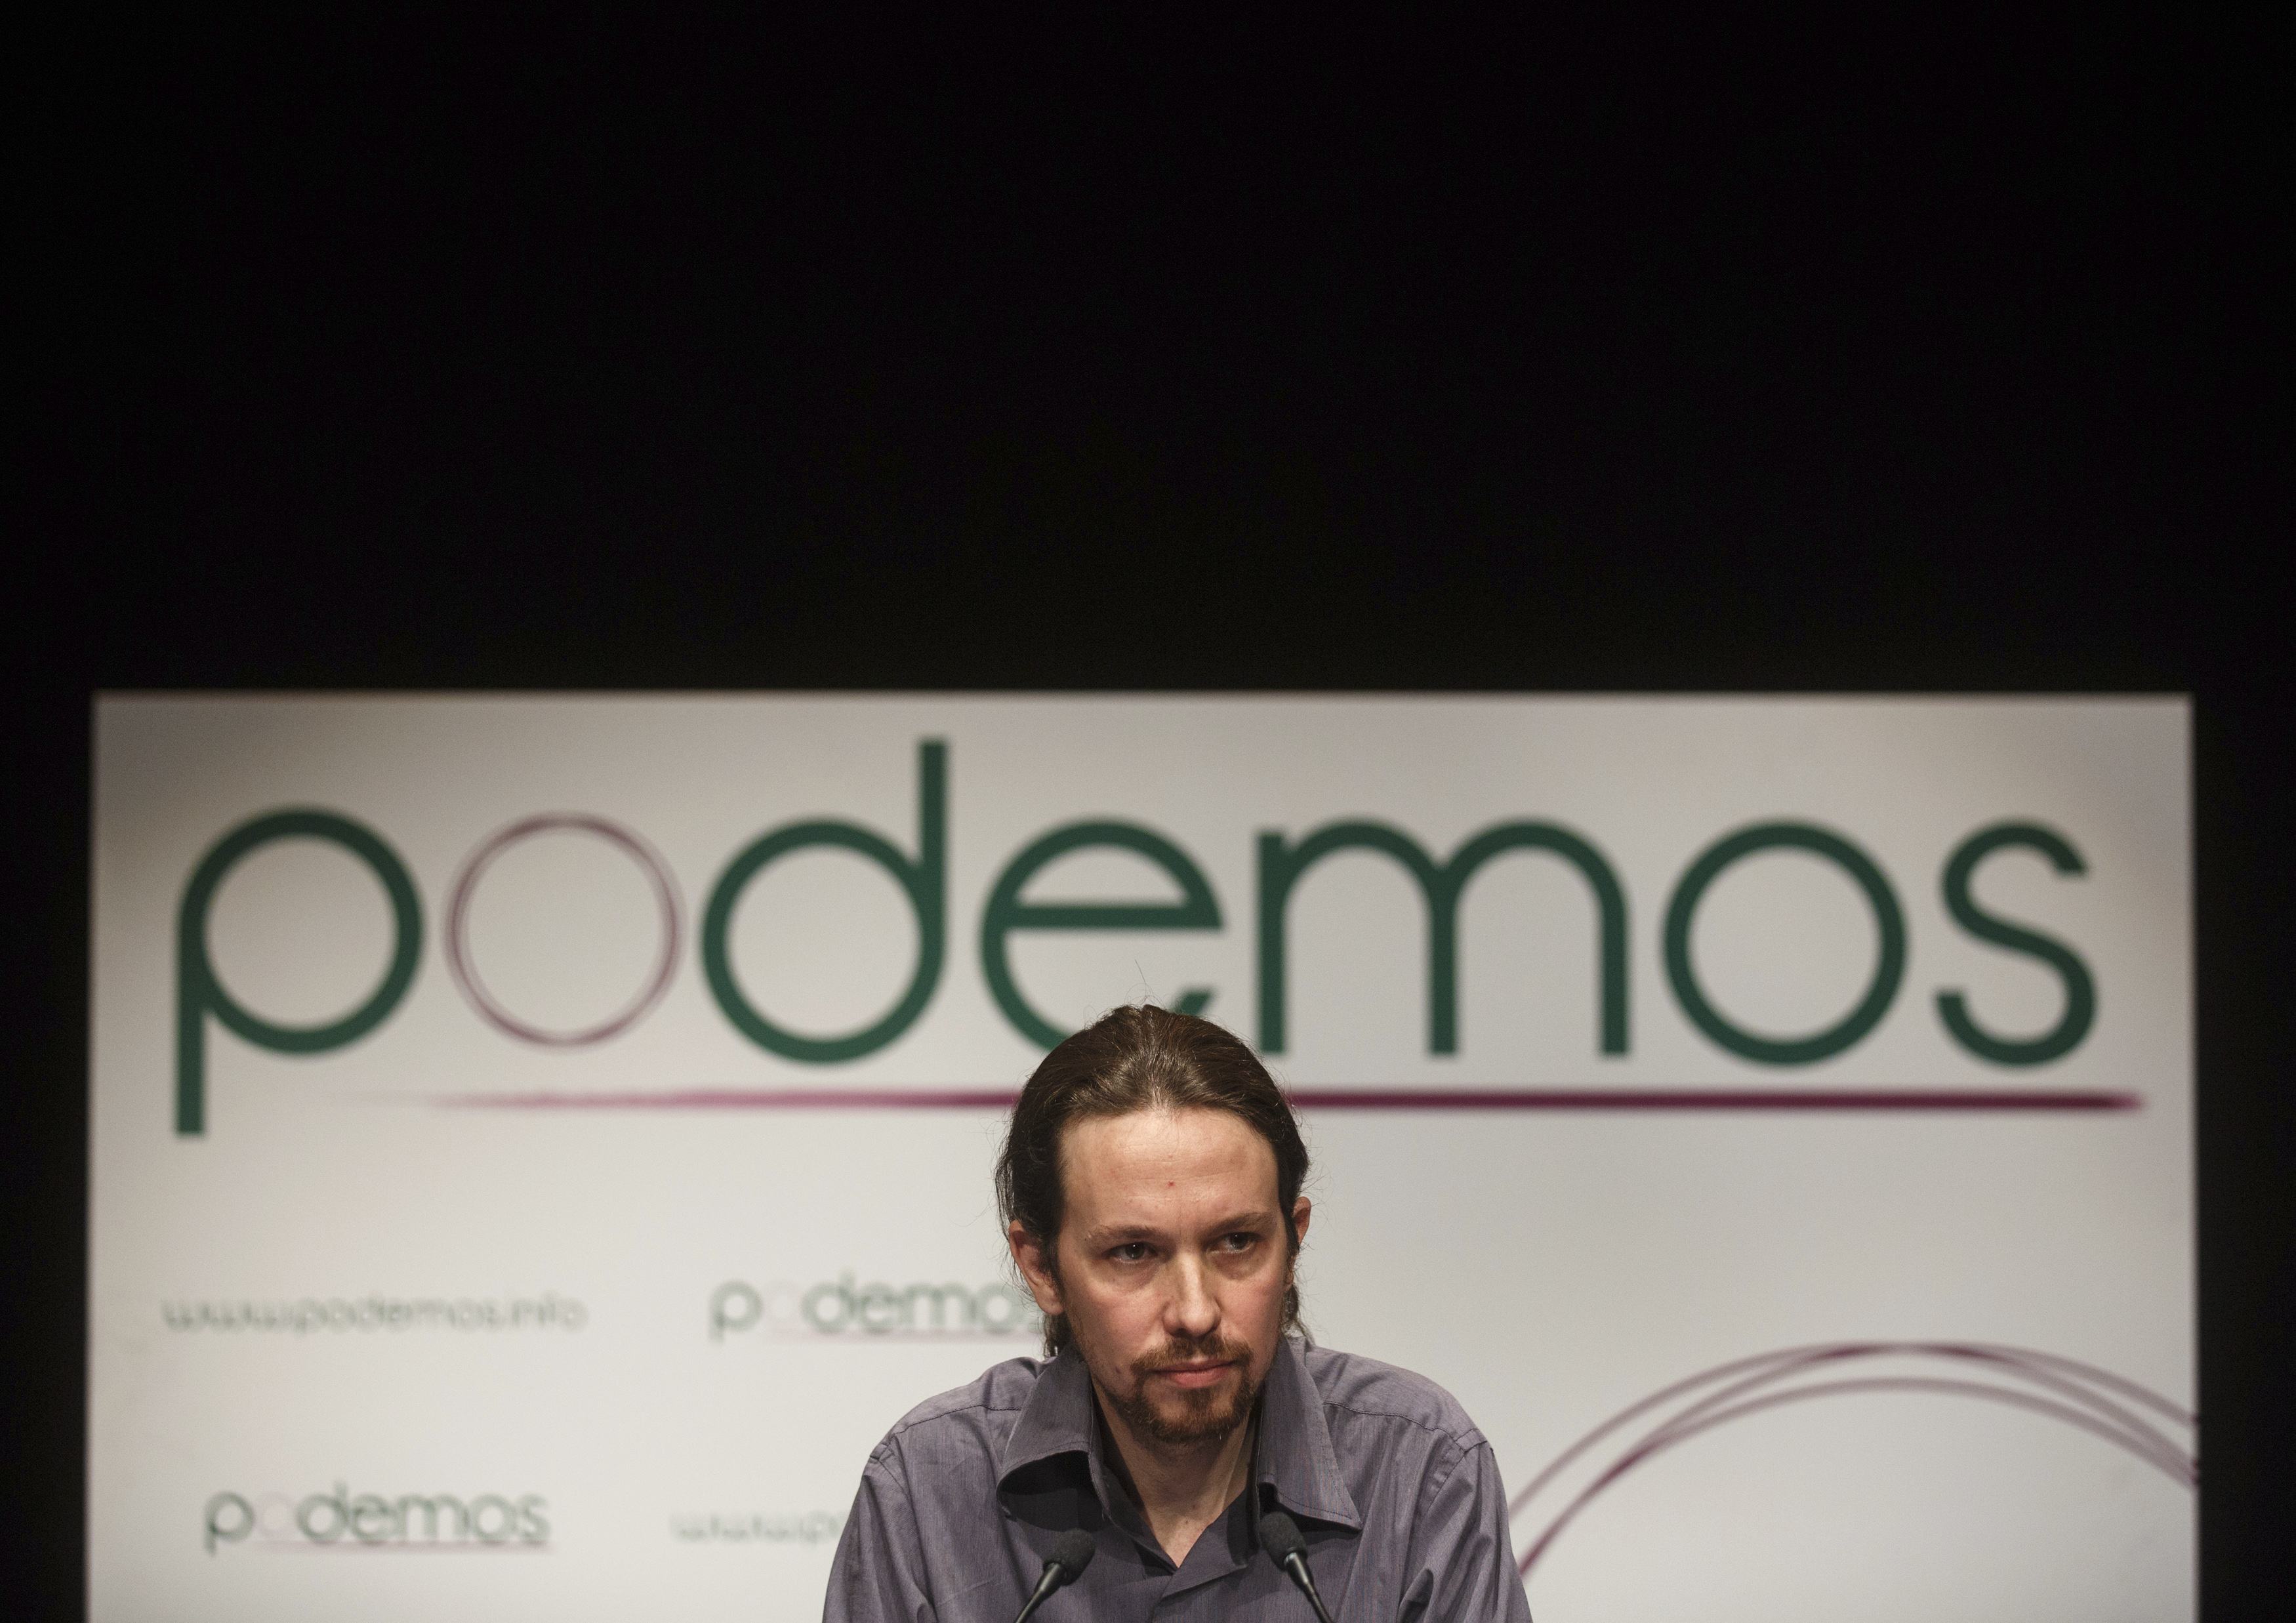 Οι Podemos κατεβαίνουν στους δρόμους της Ισπανίας